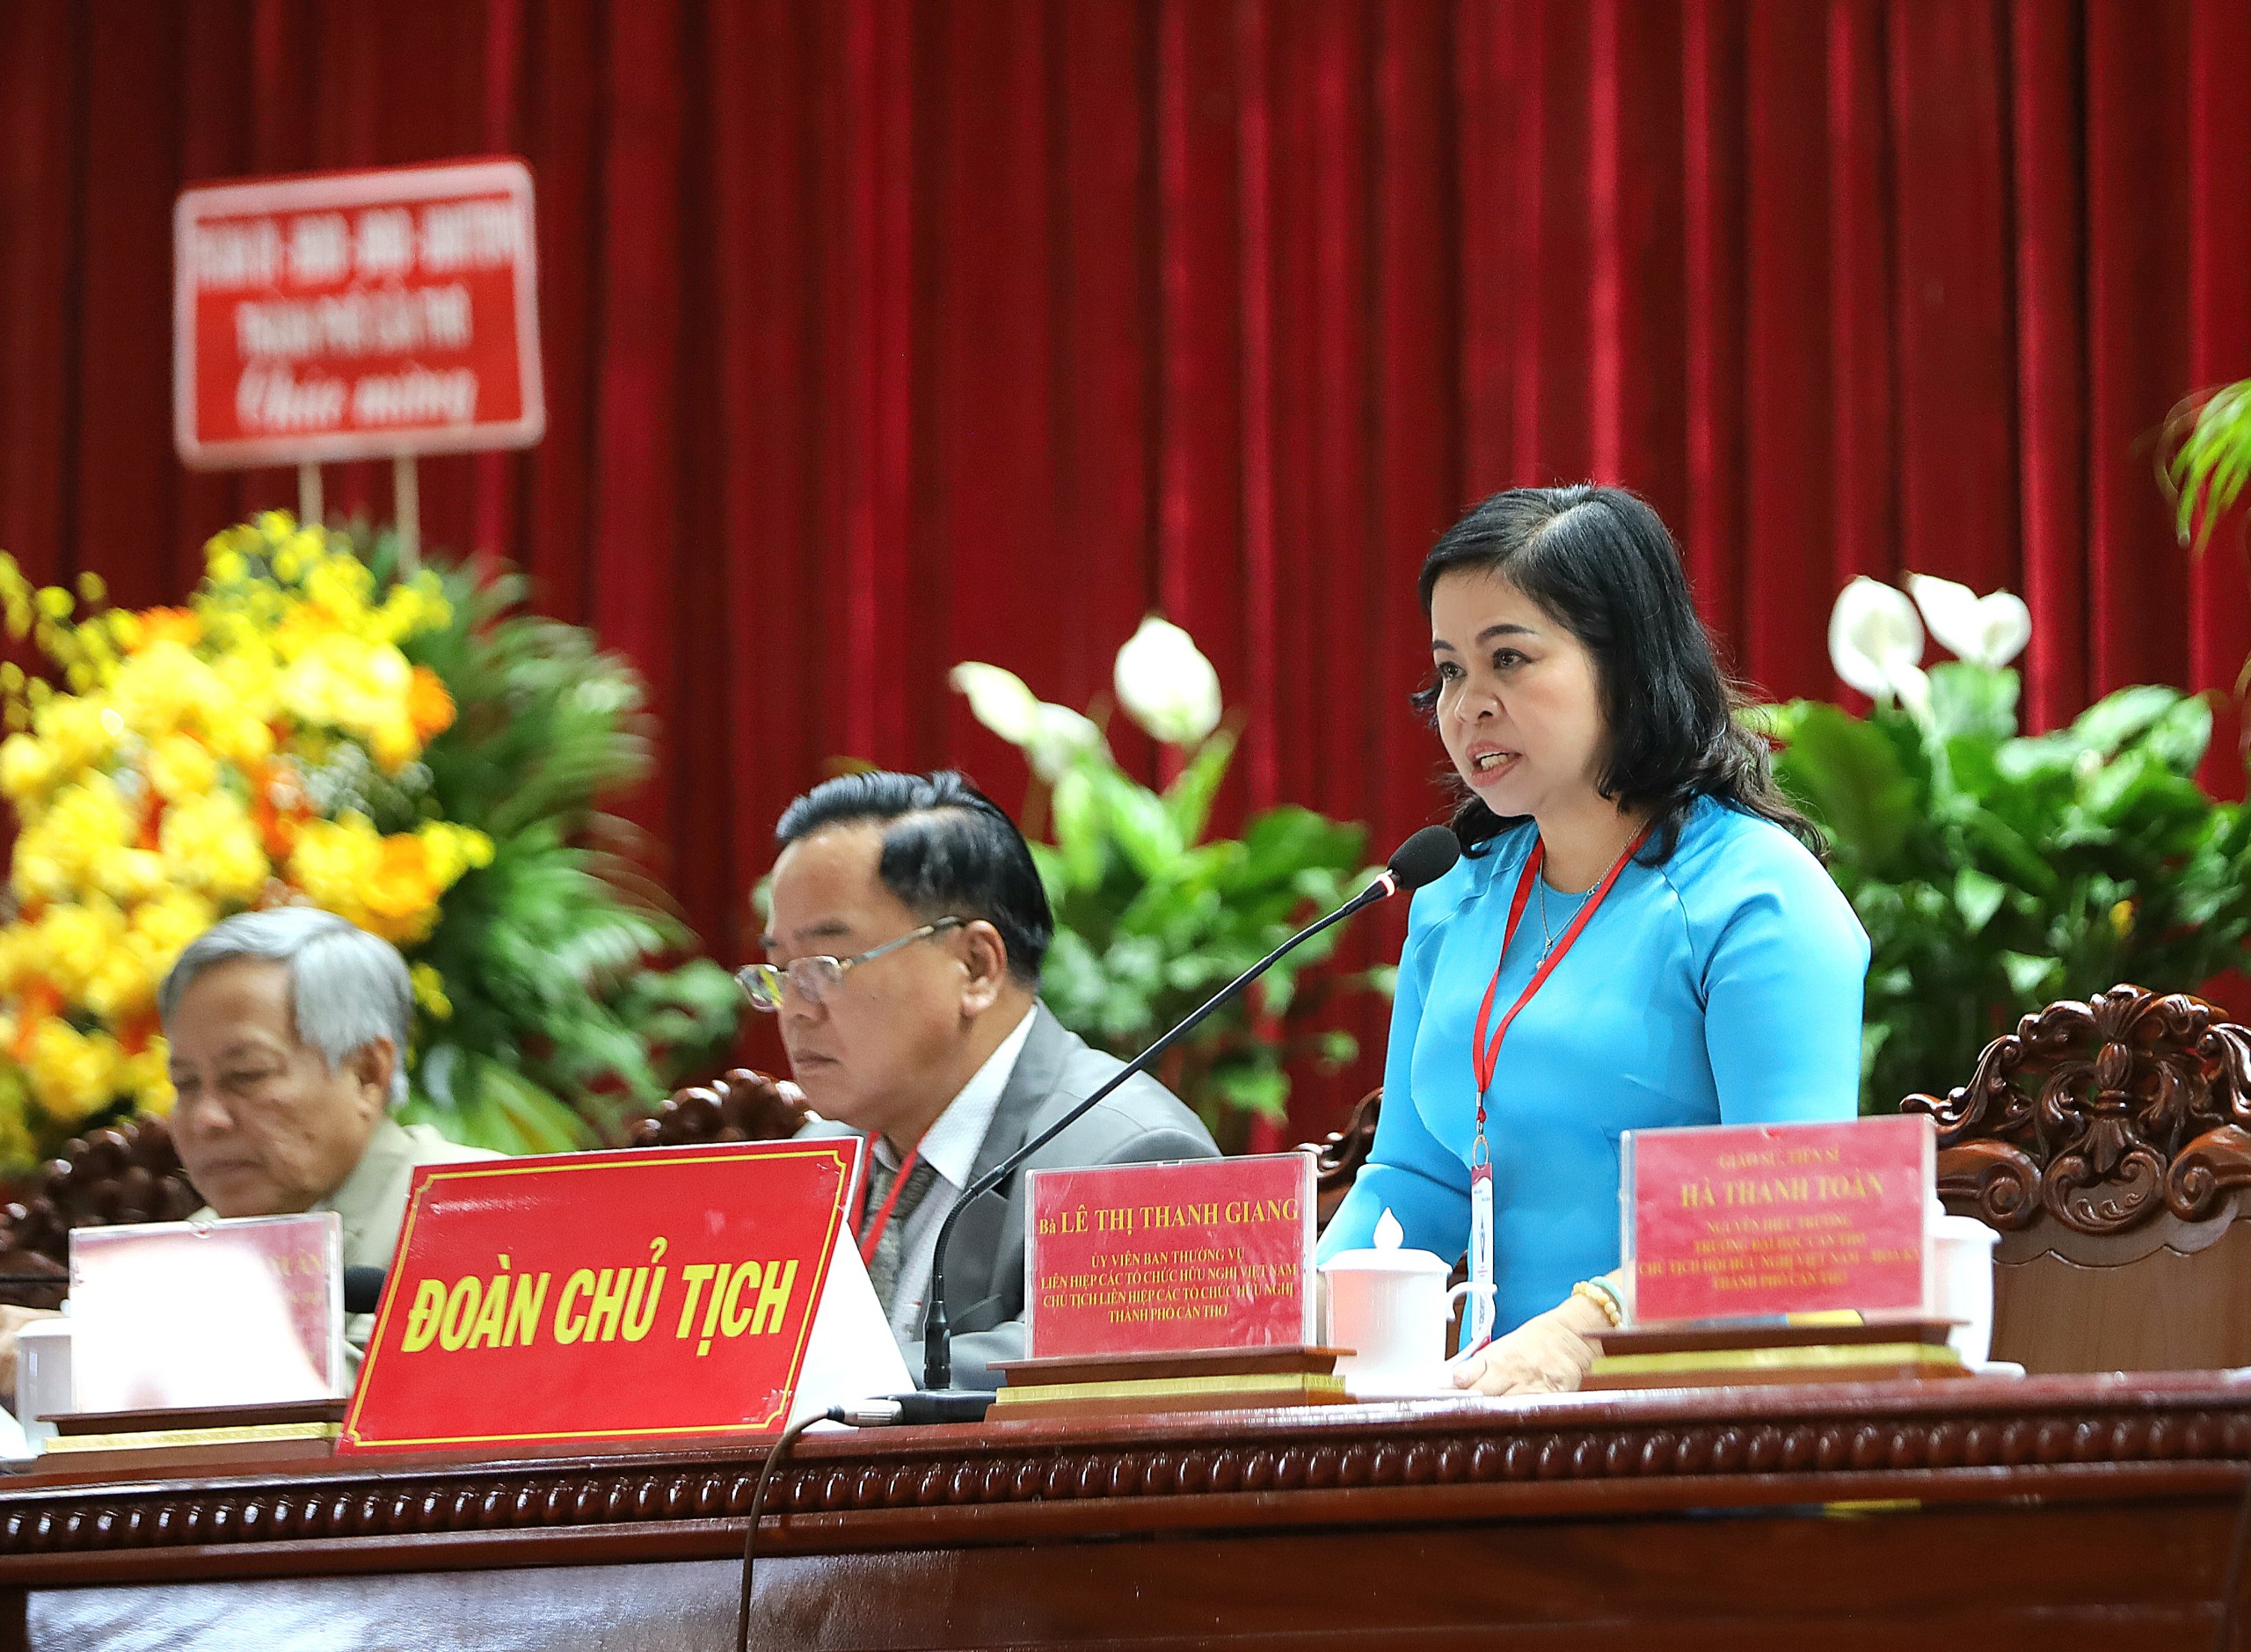 Bà Lê Thị Thanh Giang - Chủ tịch Liên hiệp các tổ chức hữu nghị TP. Cần Thơ điều hành nội dung đại hội.